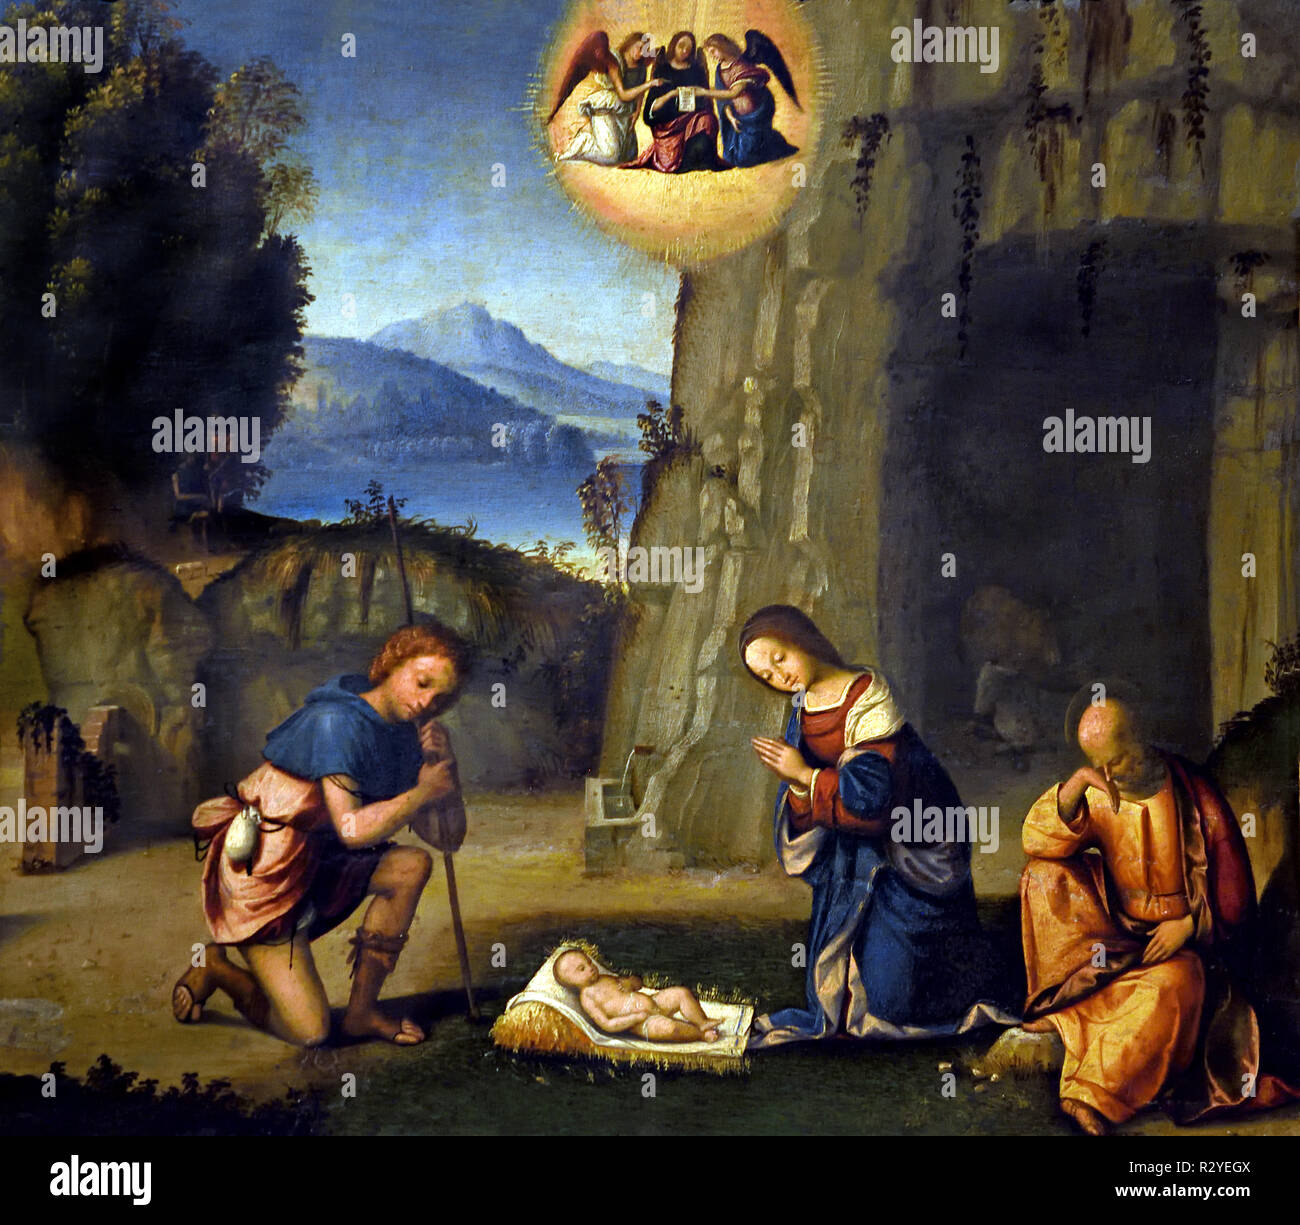 Natività con pastore - Nativité avec shepherd 1505 Garofalo (Benvenuto Tisi) 1476-1559 15-16ème siècle, l'Italie, l'italien Banque D'Images